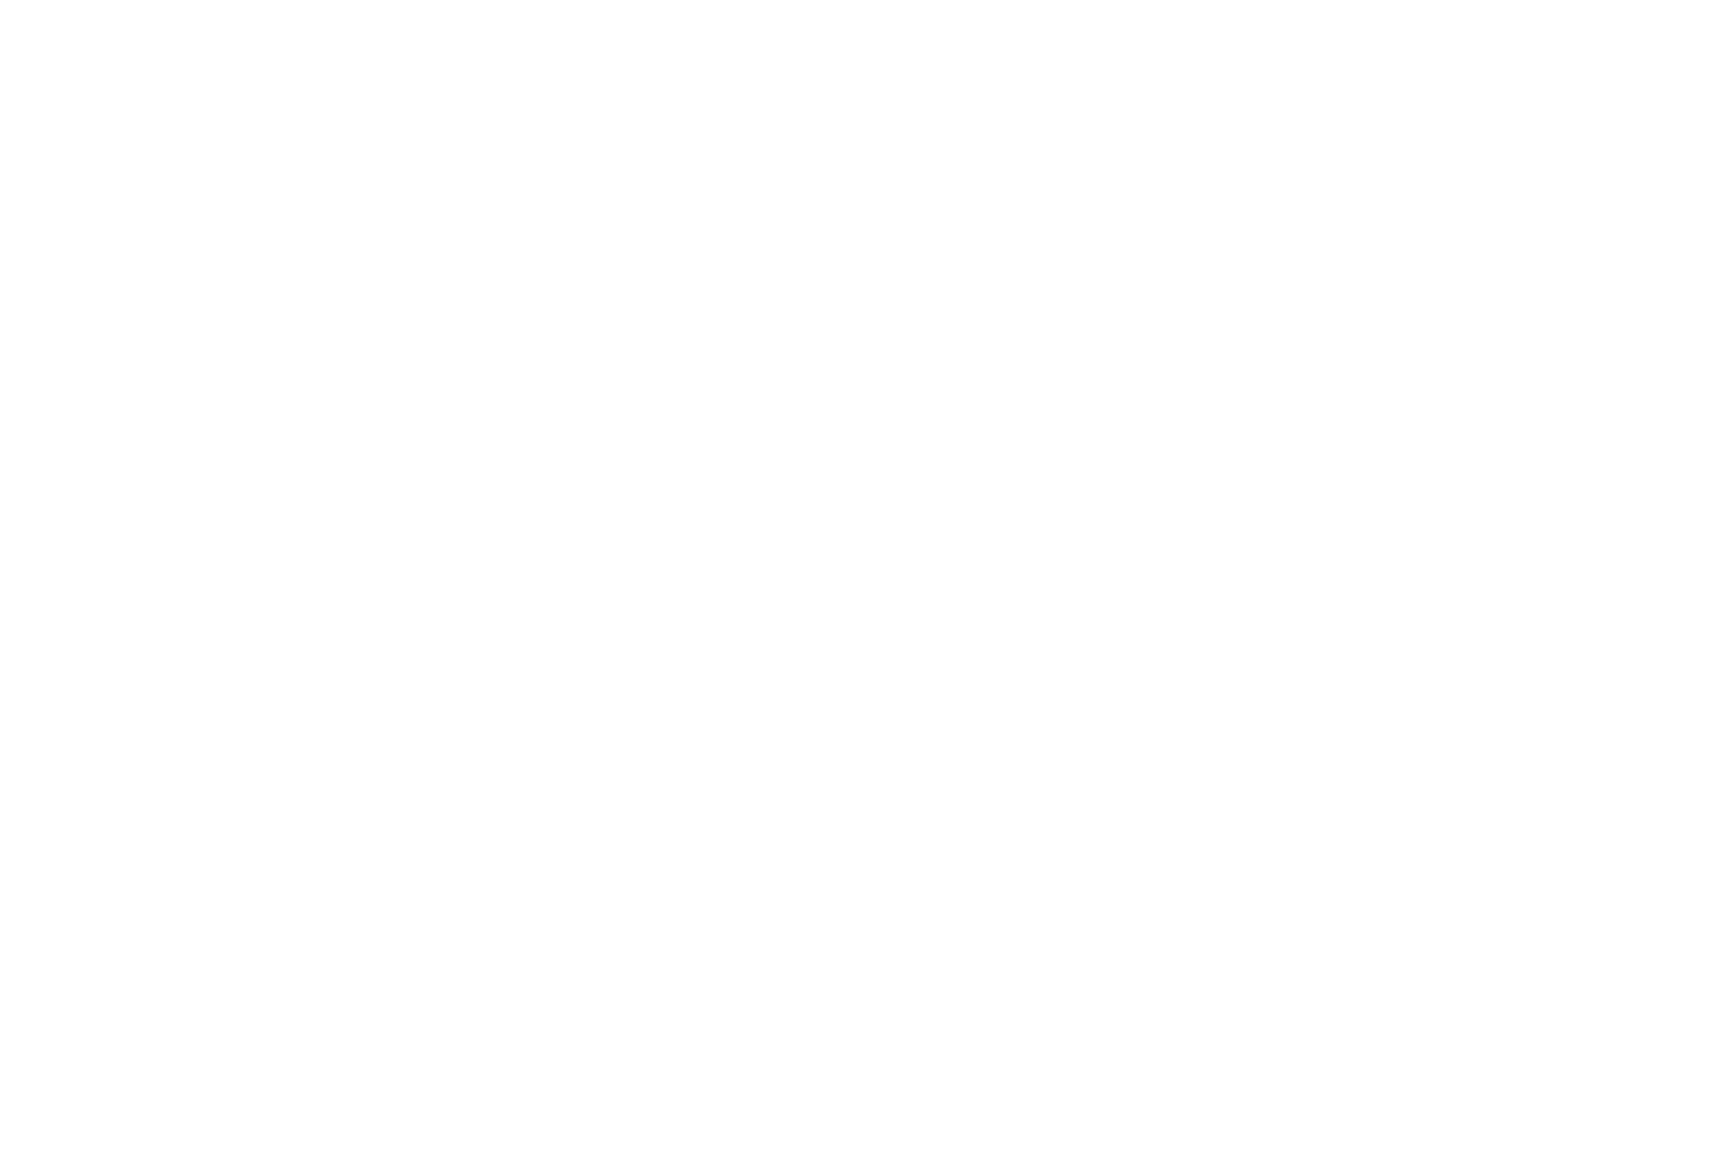 Winner Beste Produktion Munnich Music Award 2022